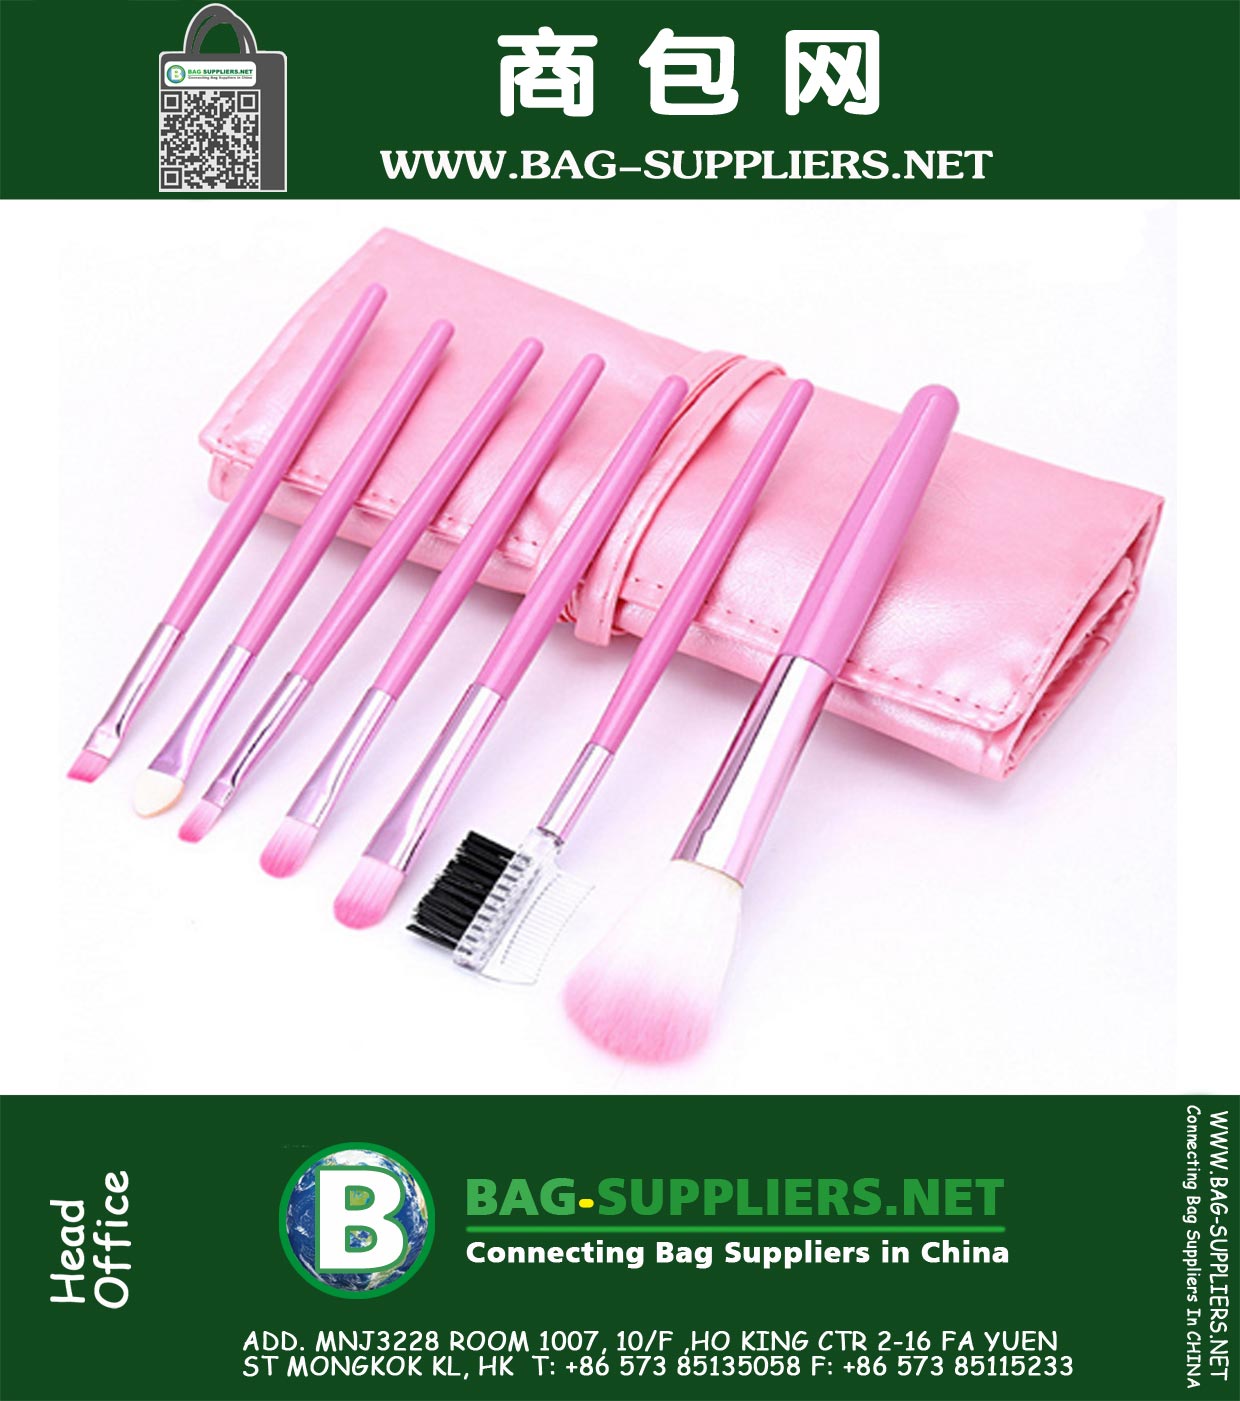 7 PCS-Verfassungs-Bürste-Rosa-Leder-Beutel-Satzes, professionelles Gesicht und Lidschatten-Pinsel Schönheit Werkzeug Make-up-Kits